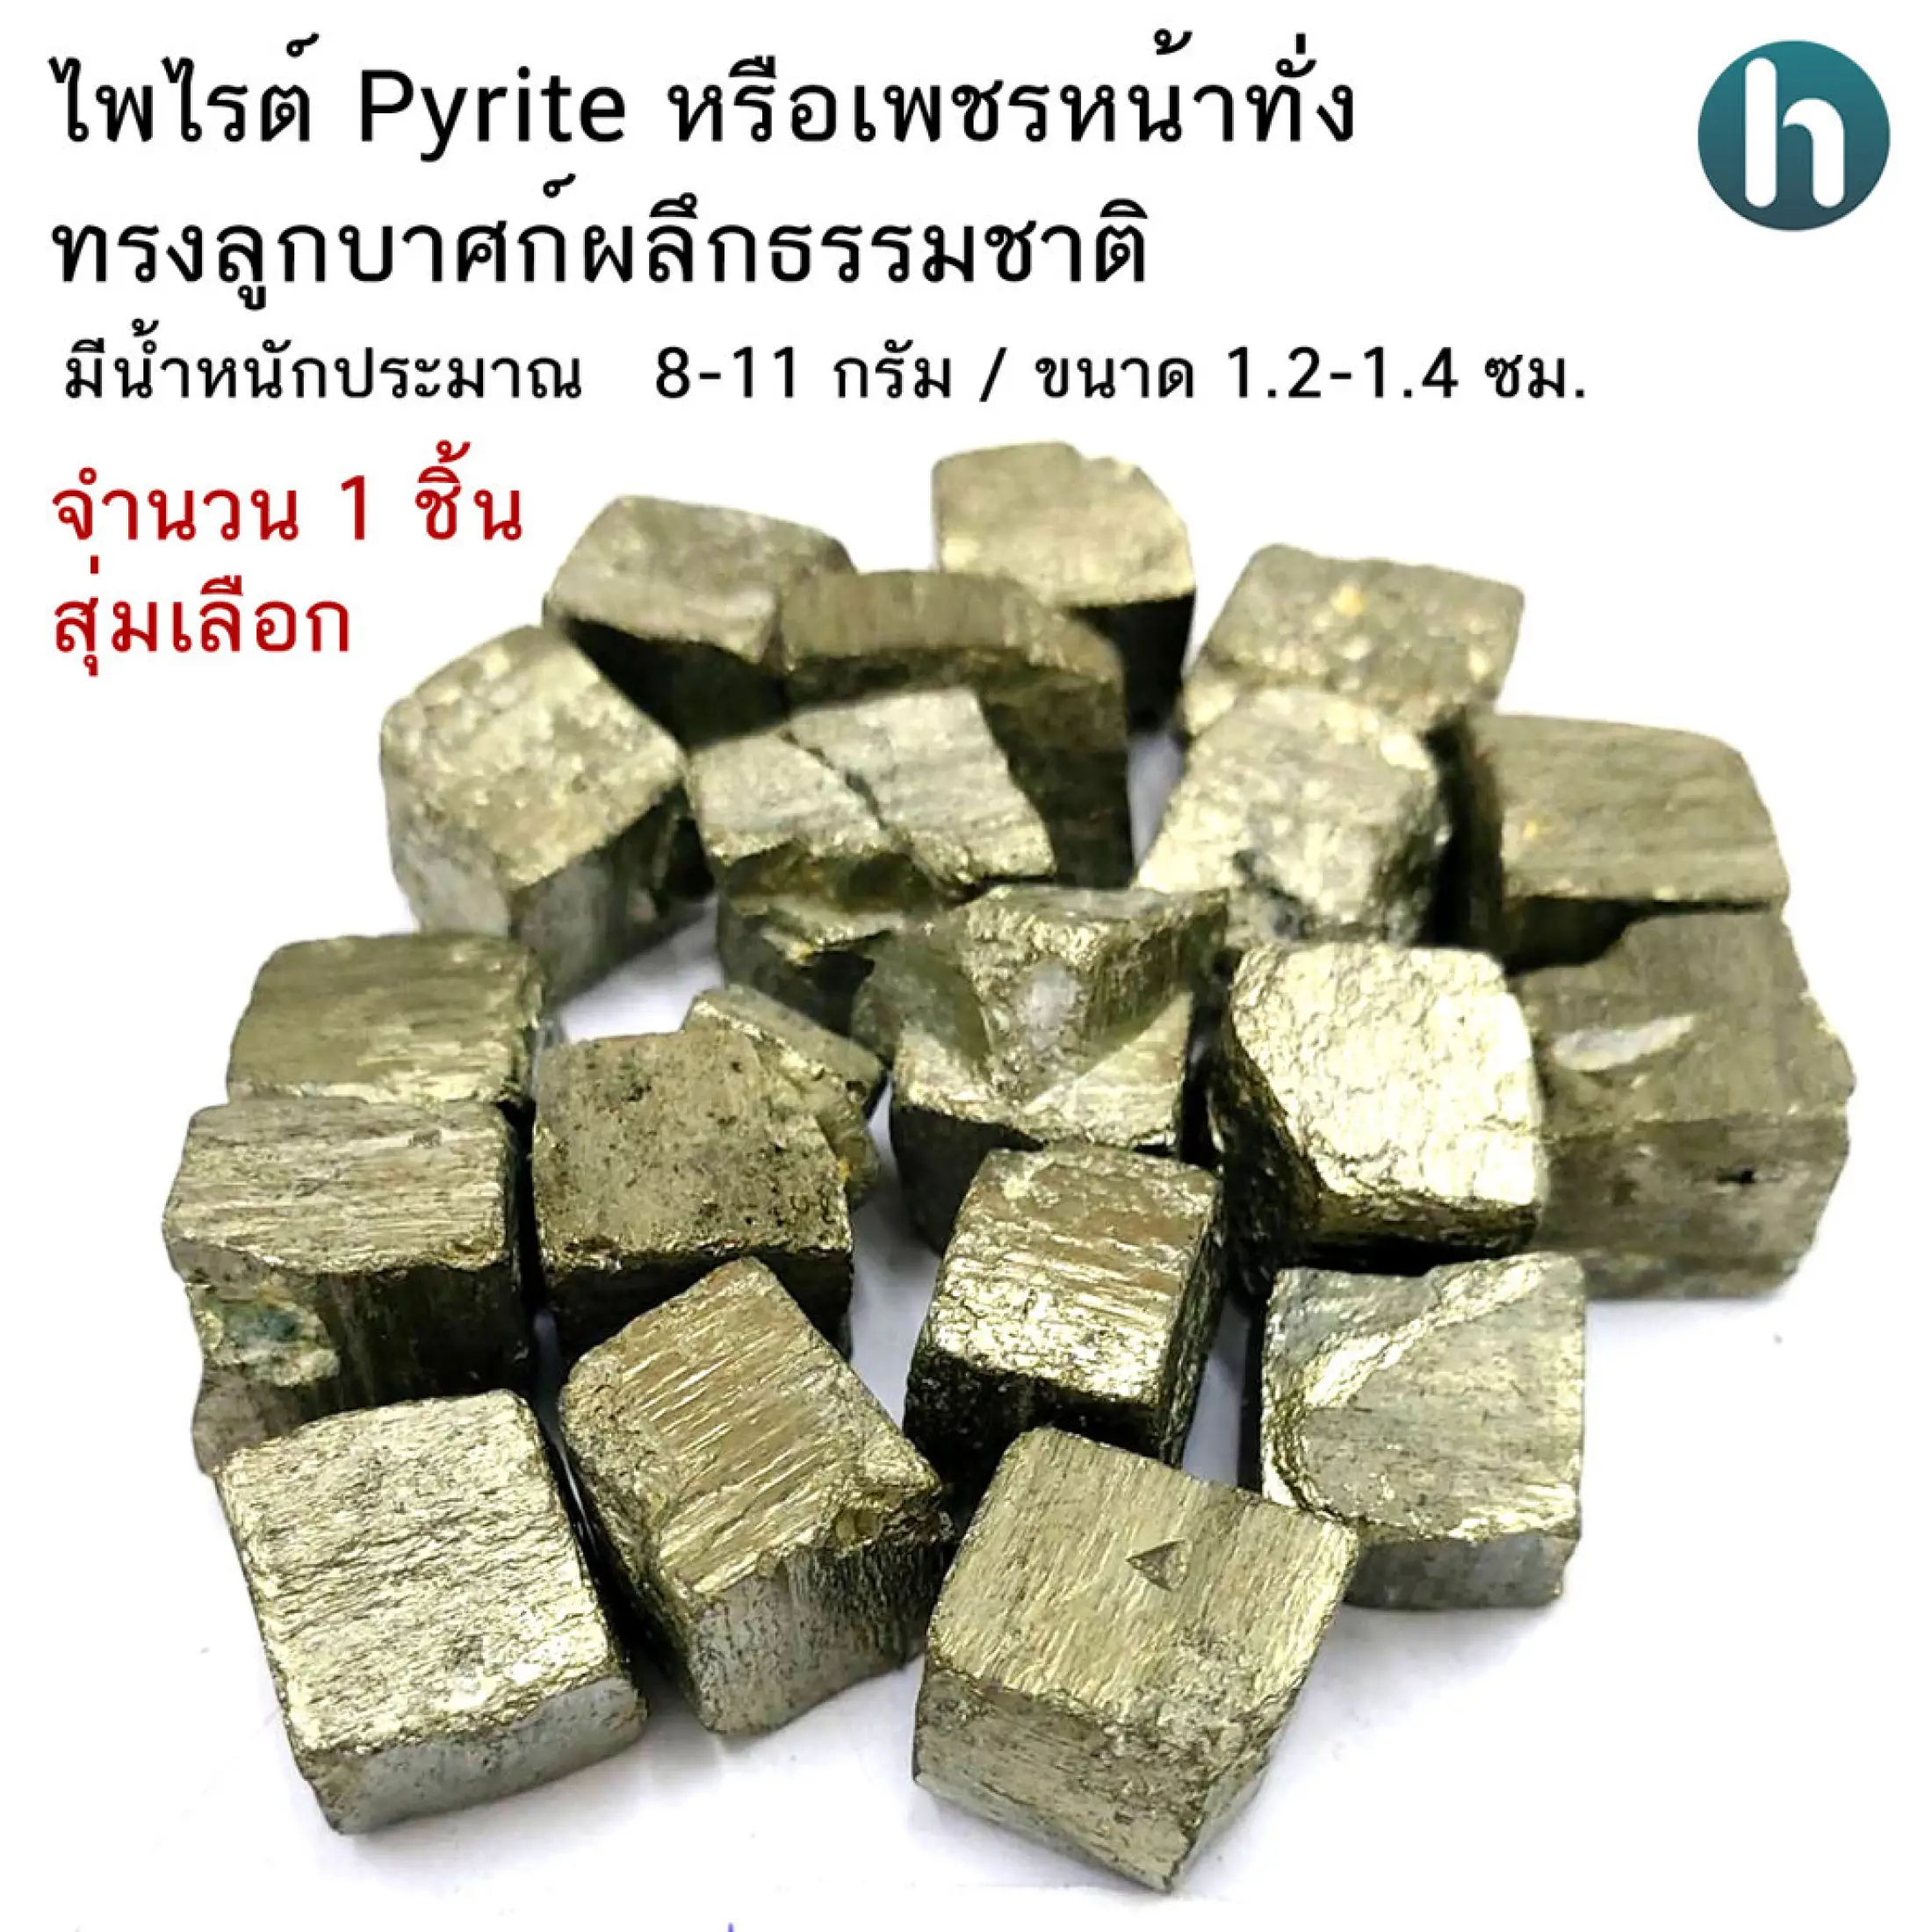 ไพไรต์ Pyrite หรือเพชรหน้าทั่งทรงลูกบาศก์ผลึกธรรมชาติ ขนาดประมาณ 1.2-1.4ซม.  จำนวน 1 ชิ้น